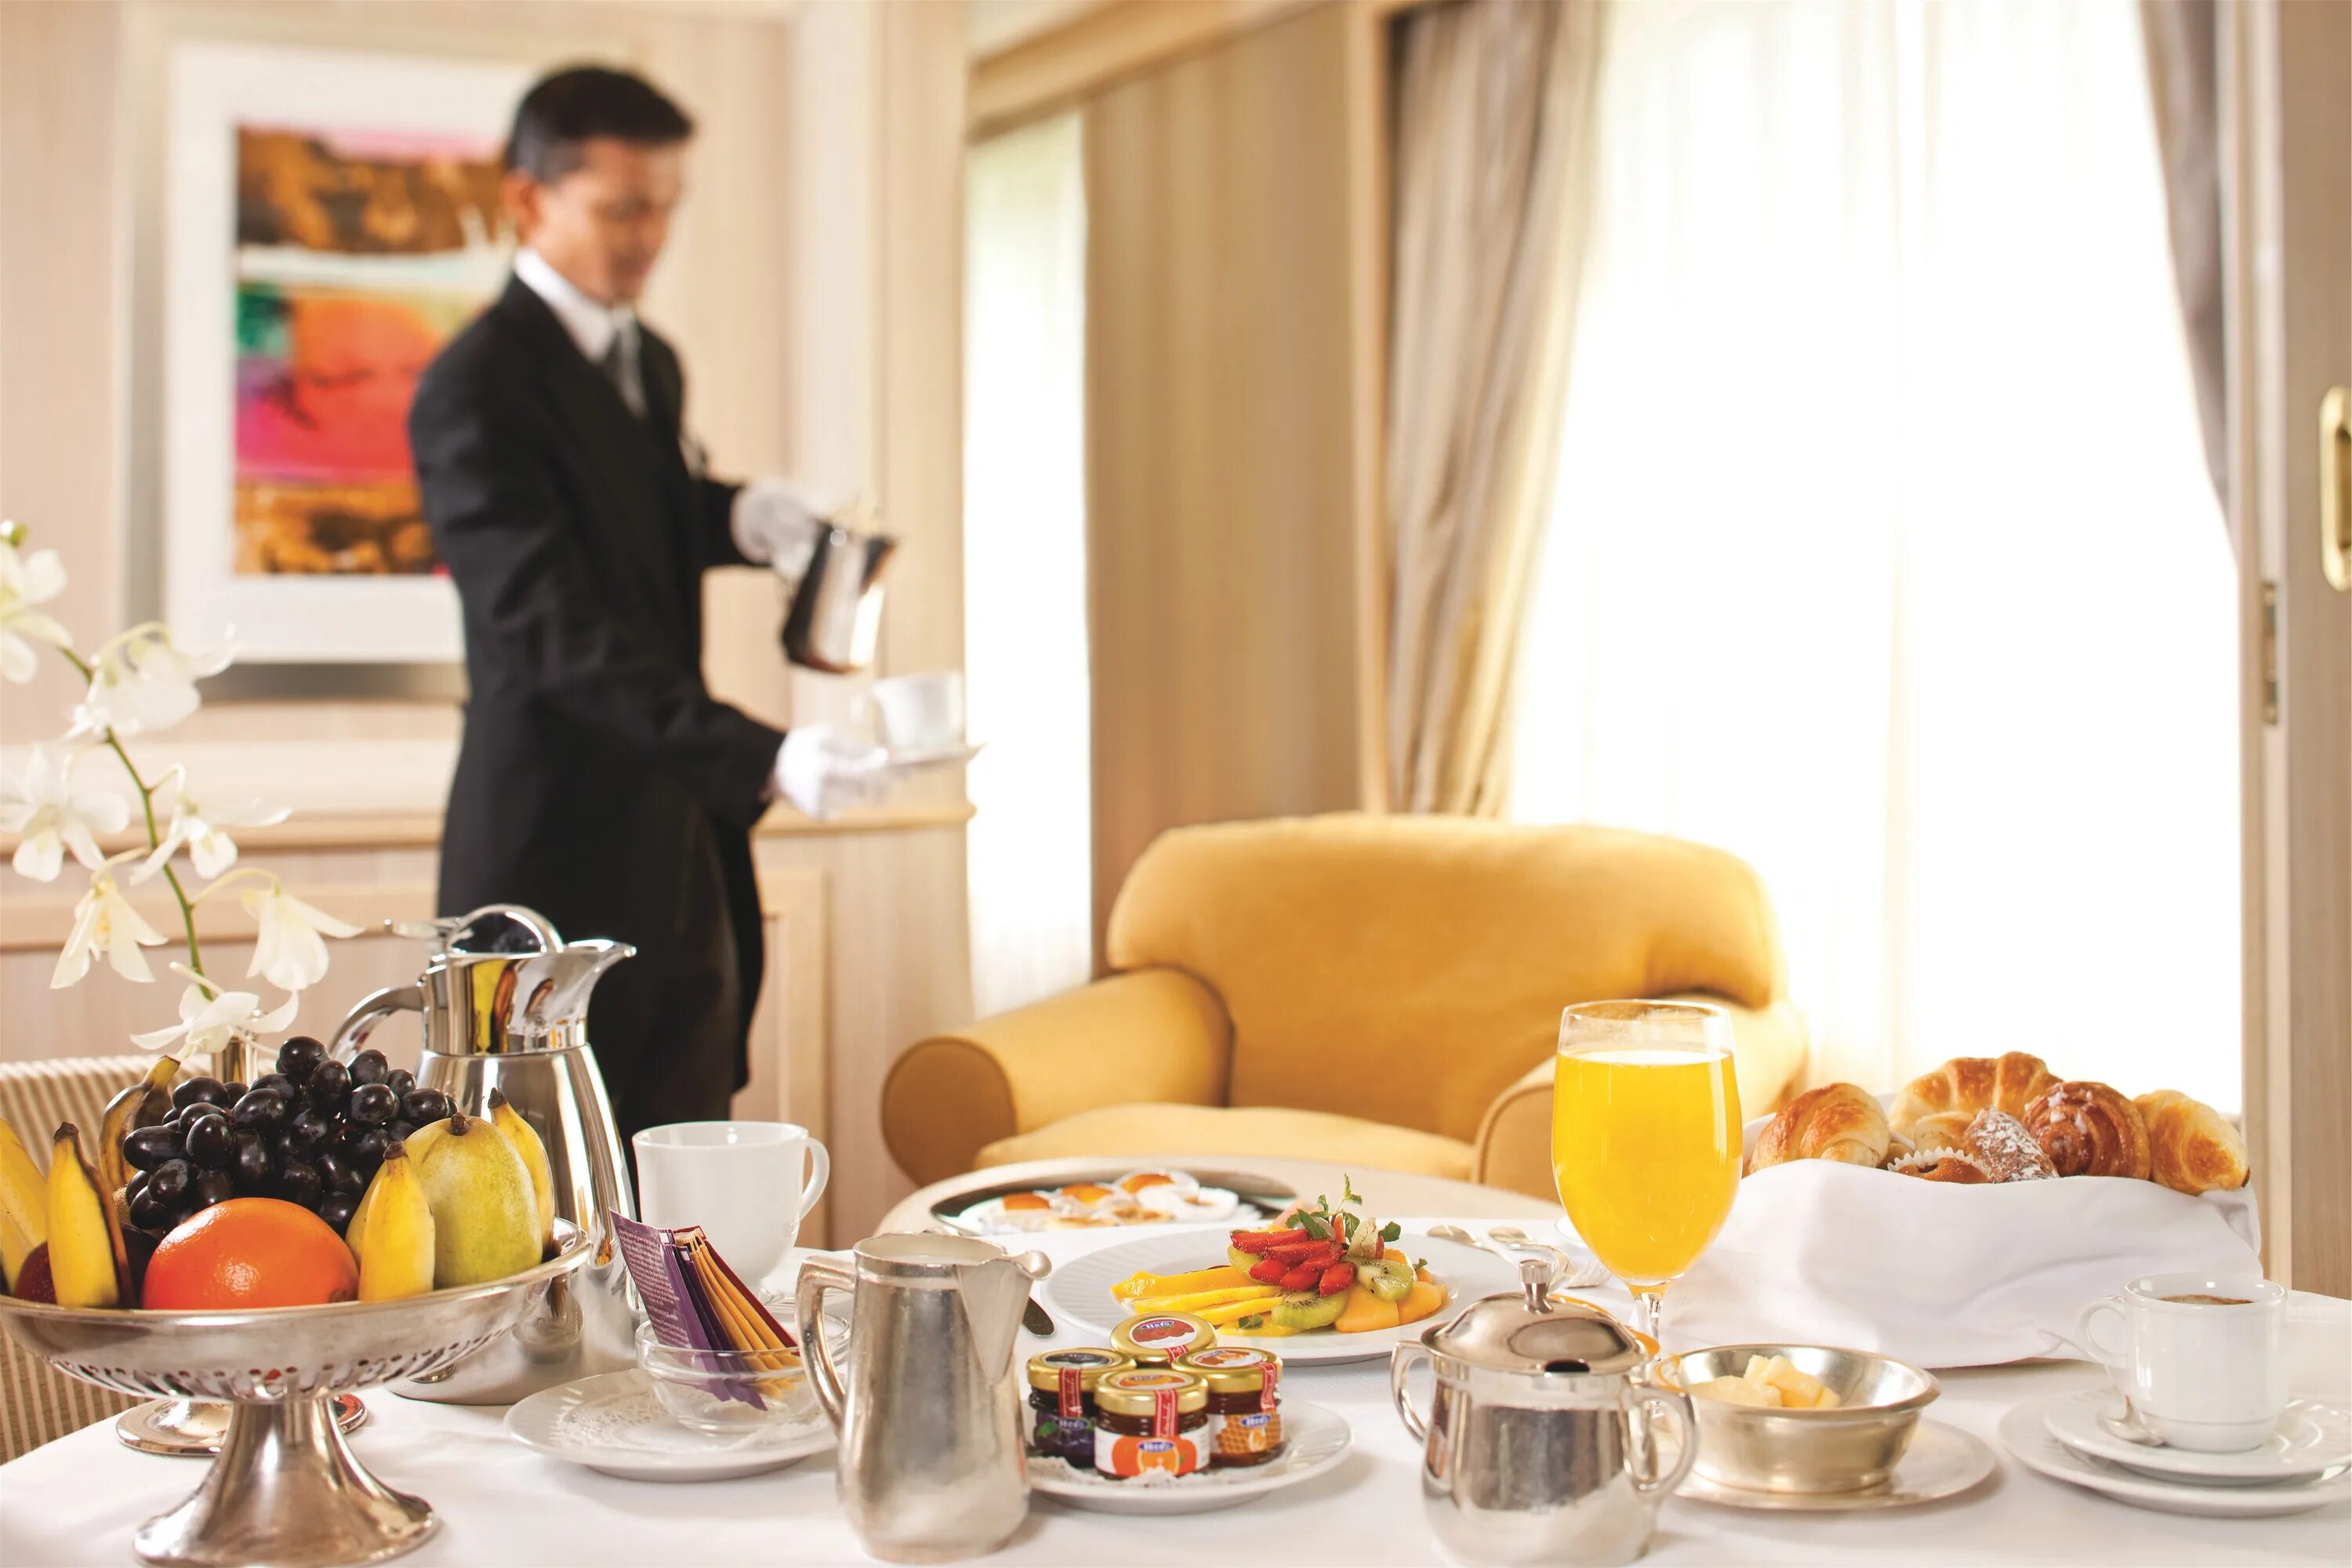 Рум сервис в гостинице. Завтрак в отеле рум сервис. Завтрак в гостинице. Завтрак в номере отеля. Основные услуги питания